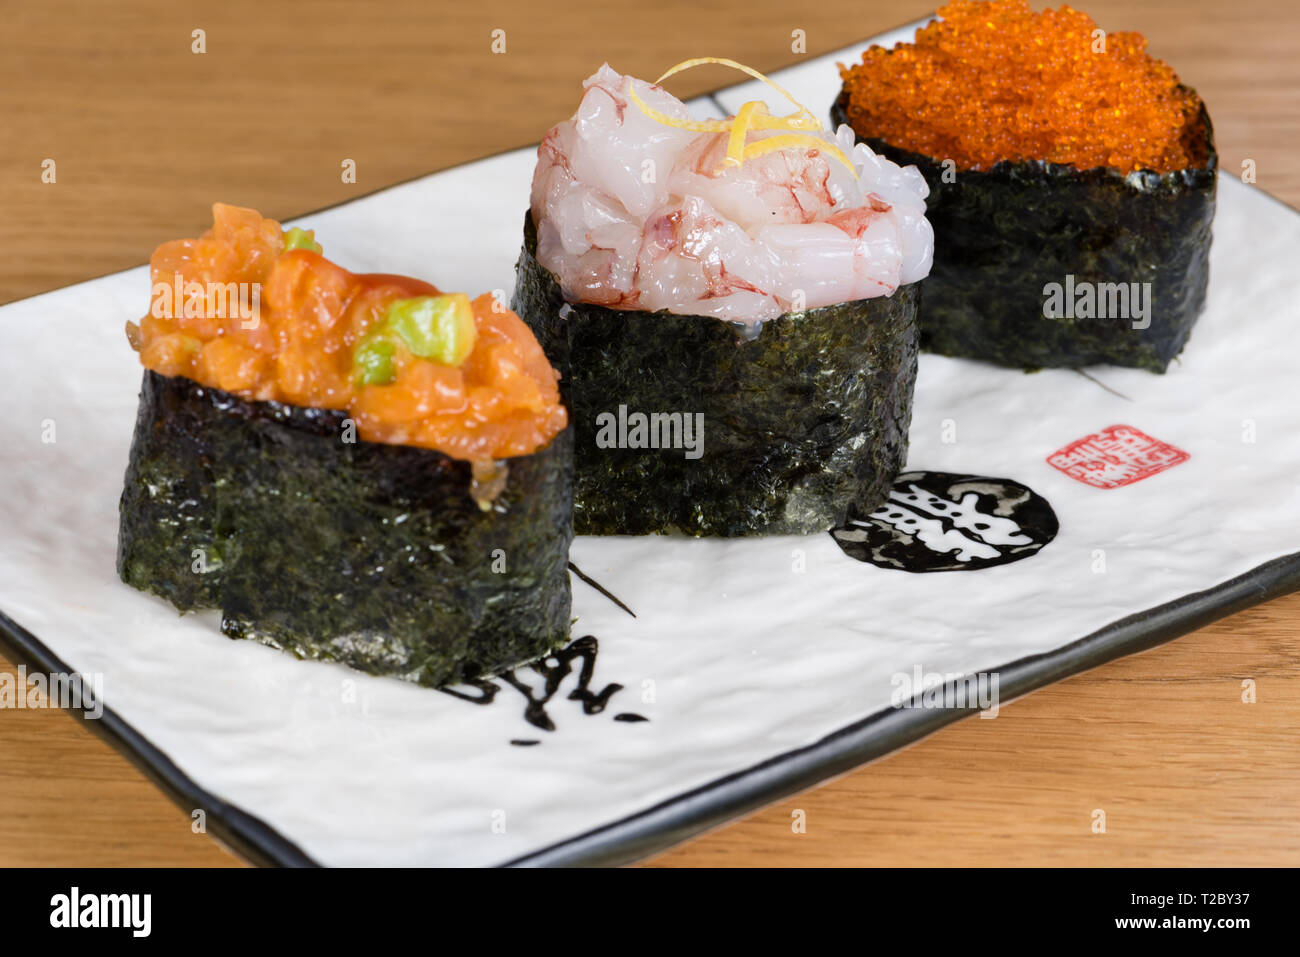 Mélange de gunkan tartare d'avocat et de saumon, de crevettes et de viande d'écorce de citron et caviar enveloppée d'algue nori, servis sur une plaque rectangulaire Banque D'Images